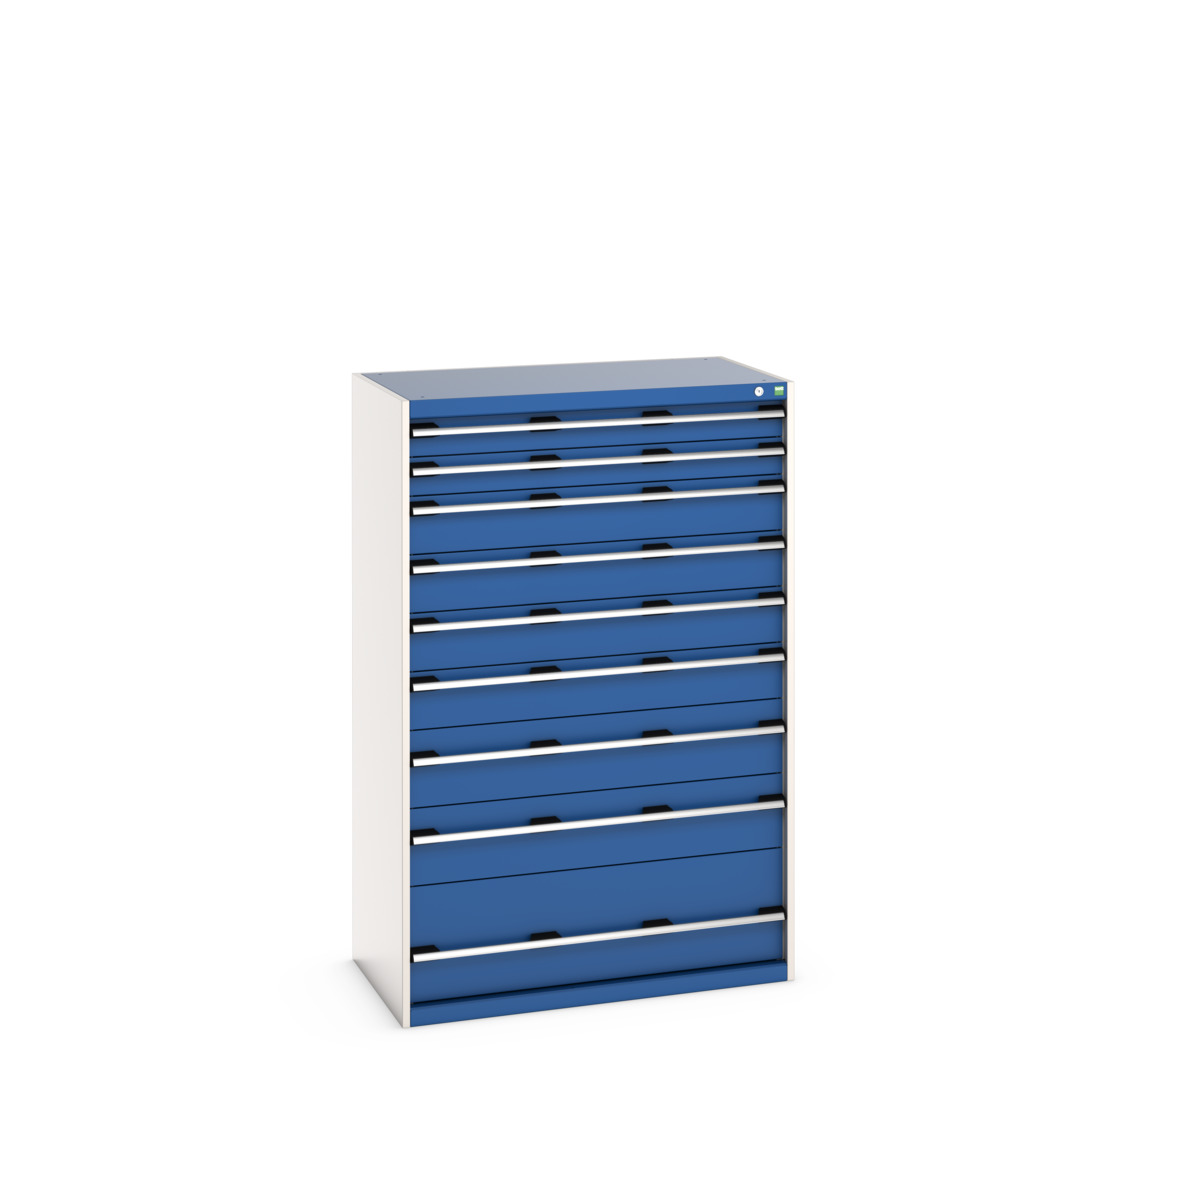 40021043.11V - cubio drawer cabinet